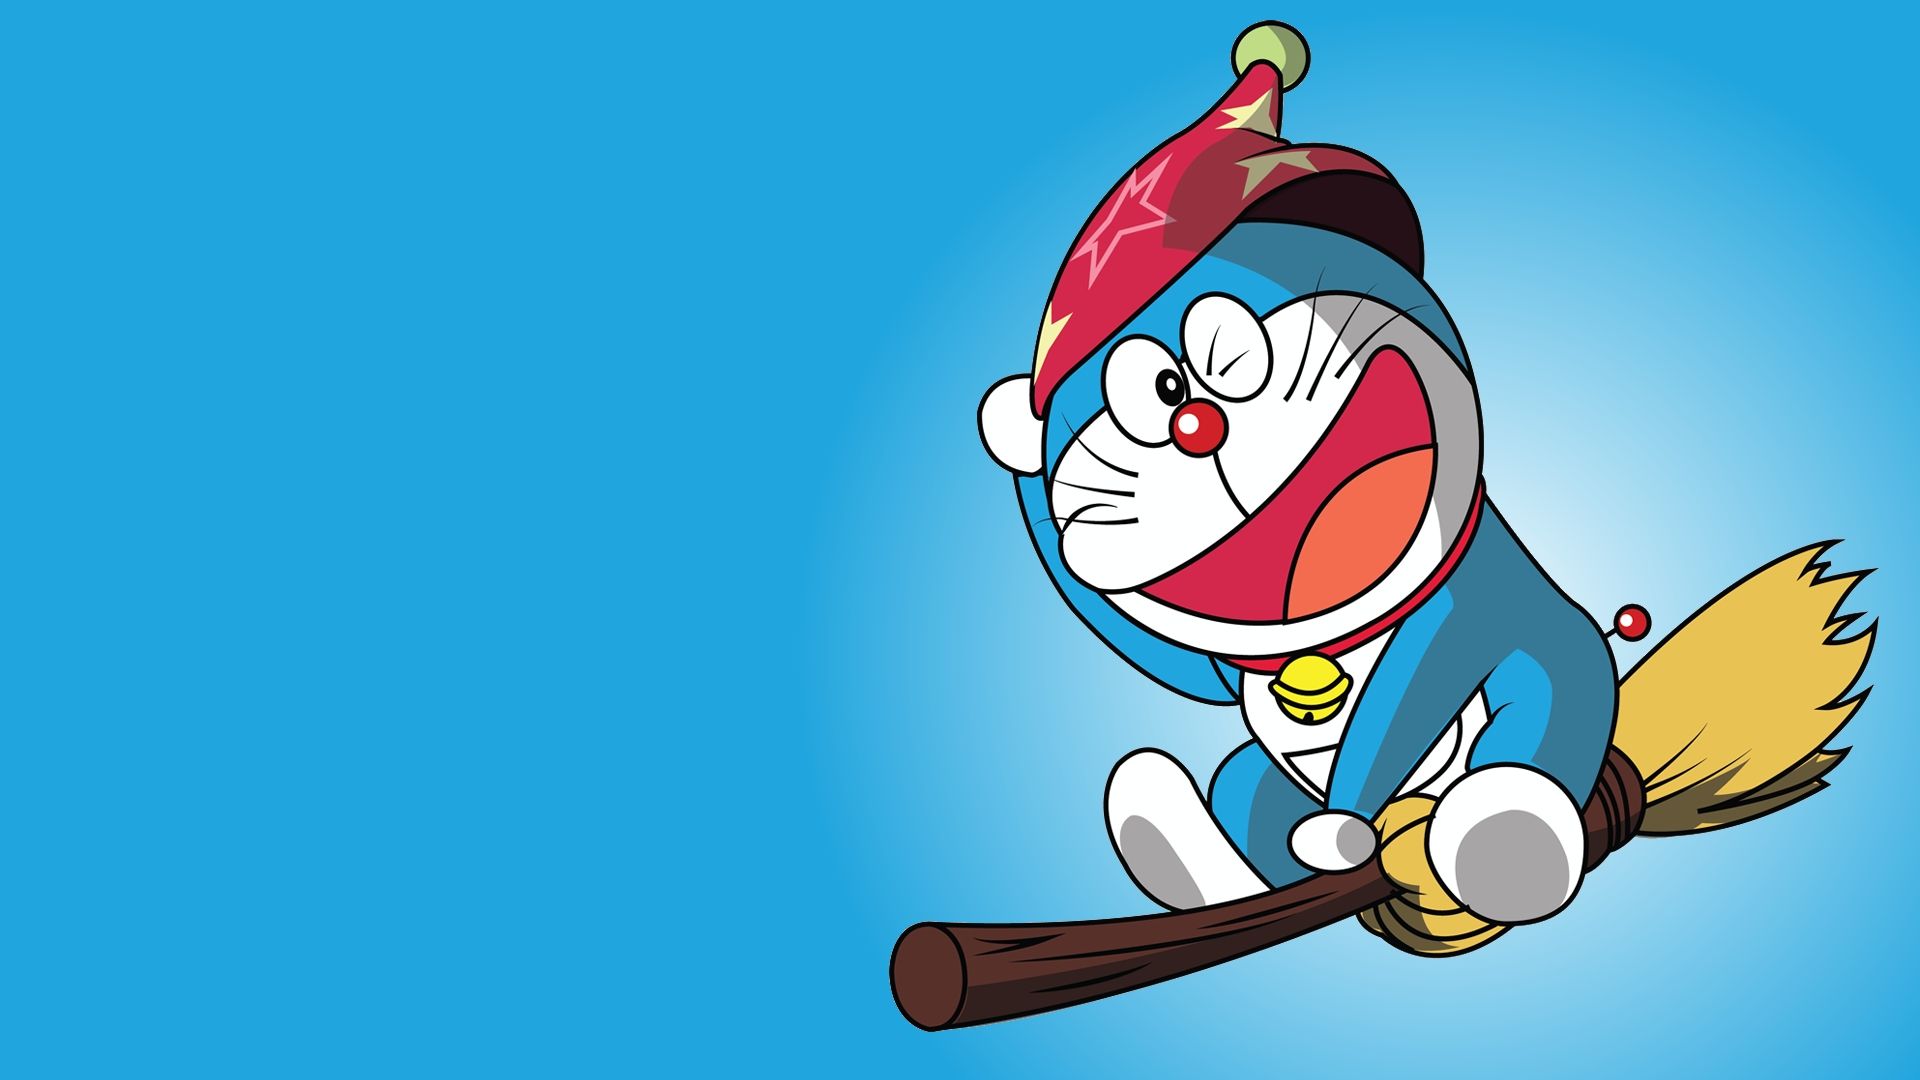 Doraemon hình nền máy tính: Với Doraemon hình nền máy tính, bạn sẽ không chỉ có một giao diện đẹp mắt mà còn được tràn đầy năng lượng tích cực. Làm việc hoặc học tập trên PC sẽ trở nên thú vị hơn bao giờ hết với cha mèo máy nổi tiếng này kèm theo bạn.